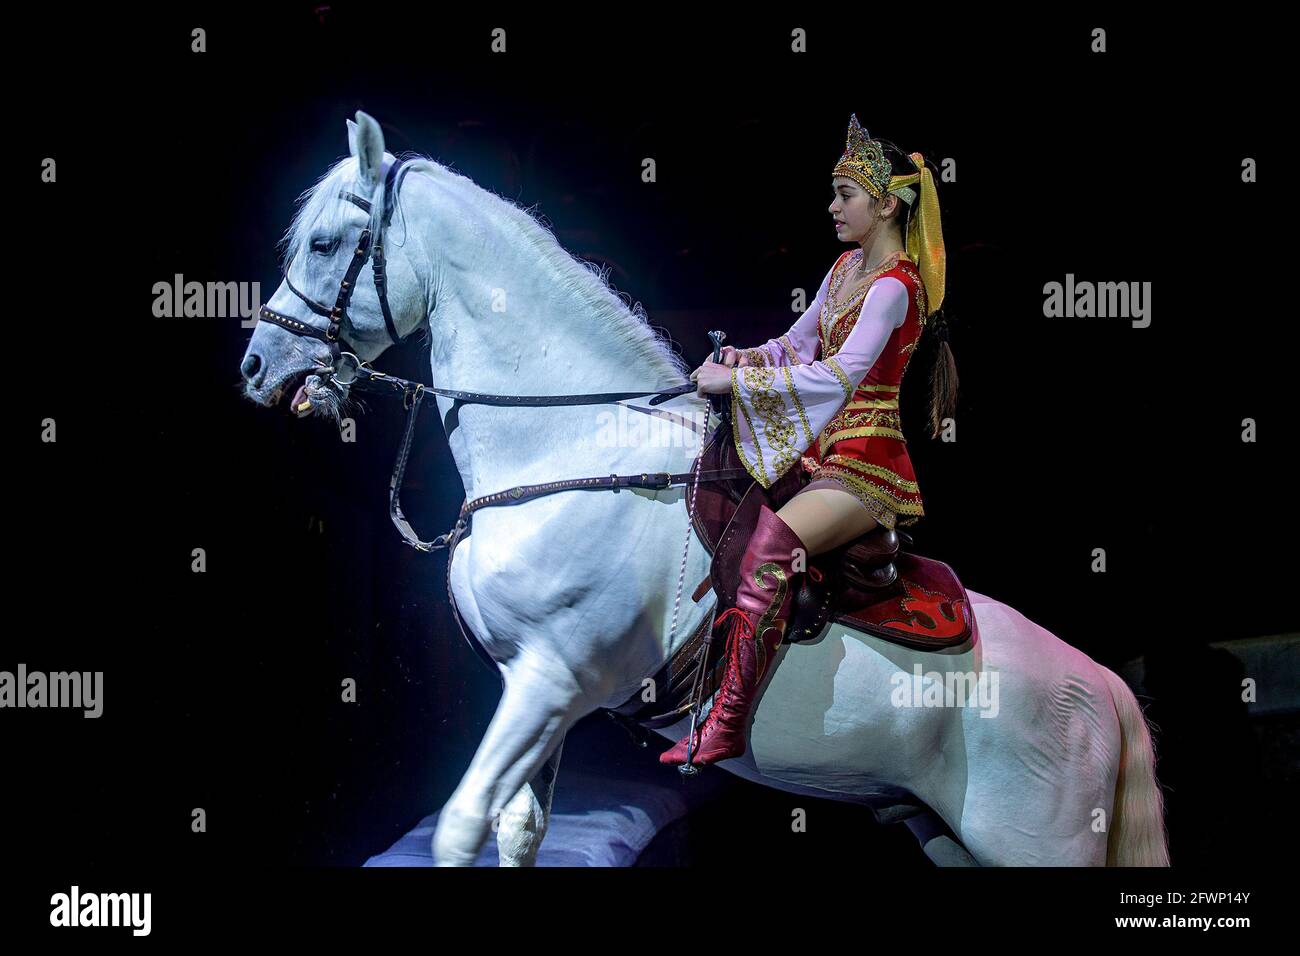 Sankt Petersburg, Russland 08-18-2019. Künstler auf dem Pferderücken bei Dressur und Akrobatik in einer Zirkusvorstellung. Stockfoto